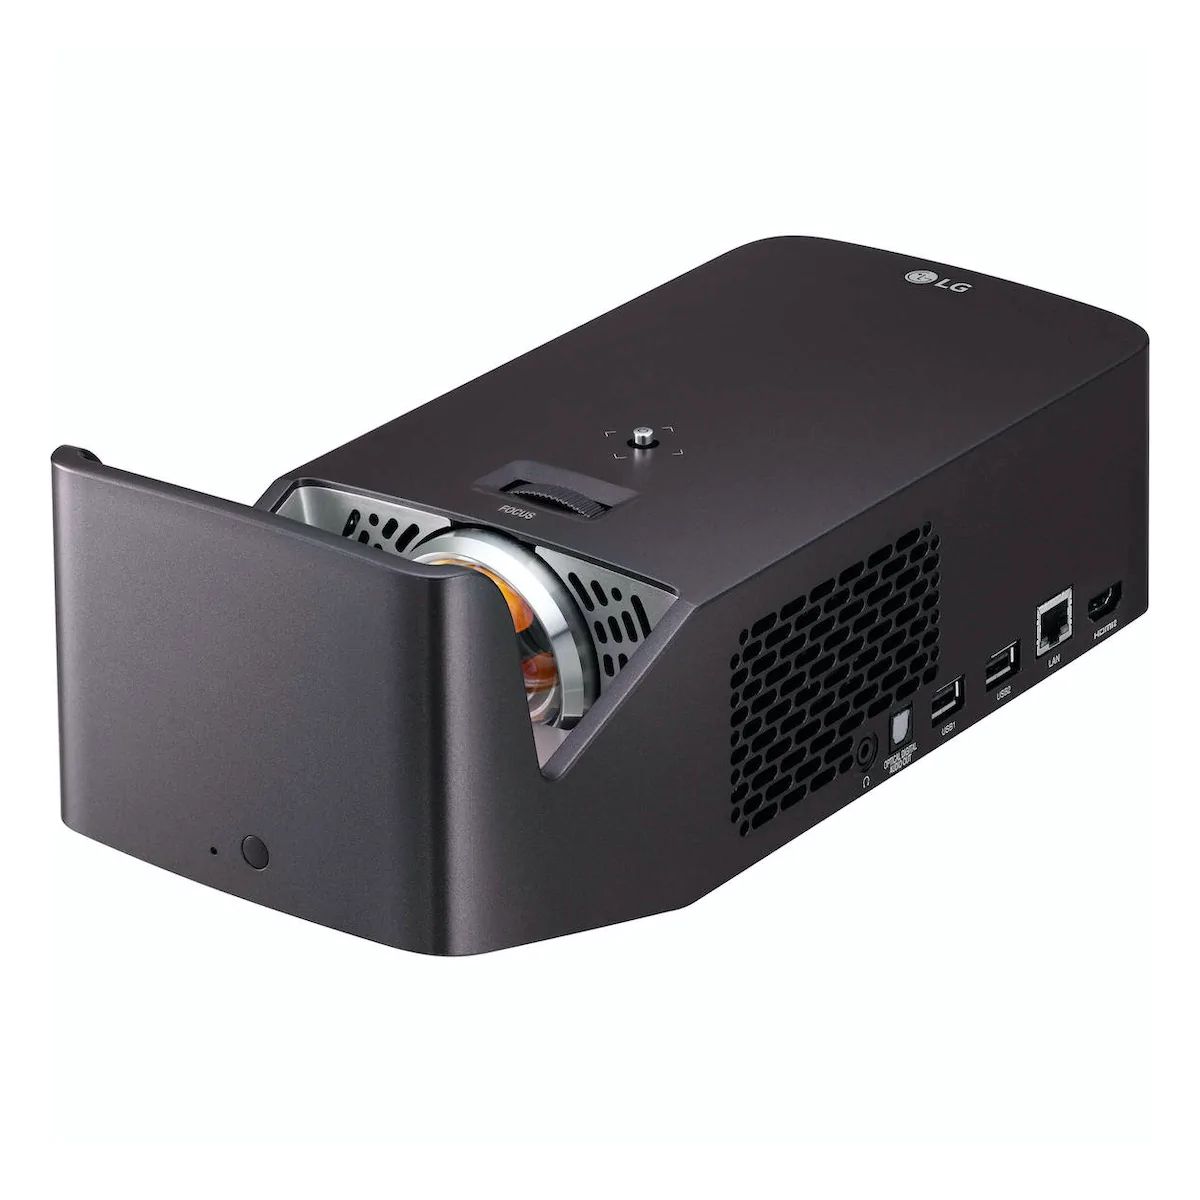 LG Projectors PF1000UG - Ultra Short Throw Full HD Projector